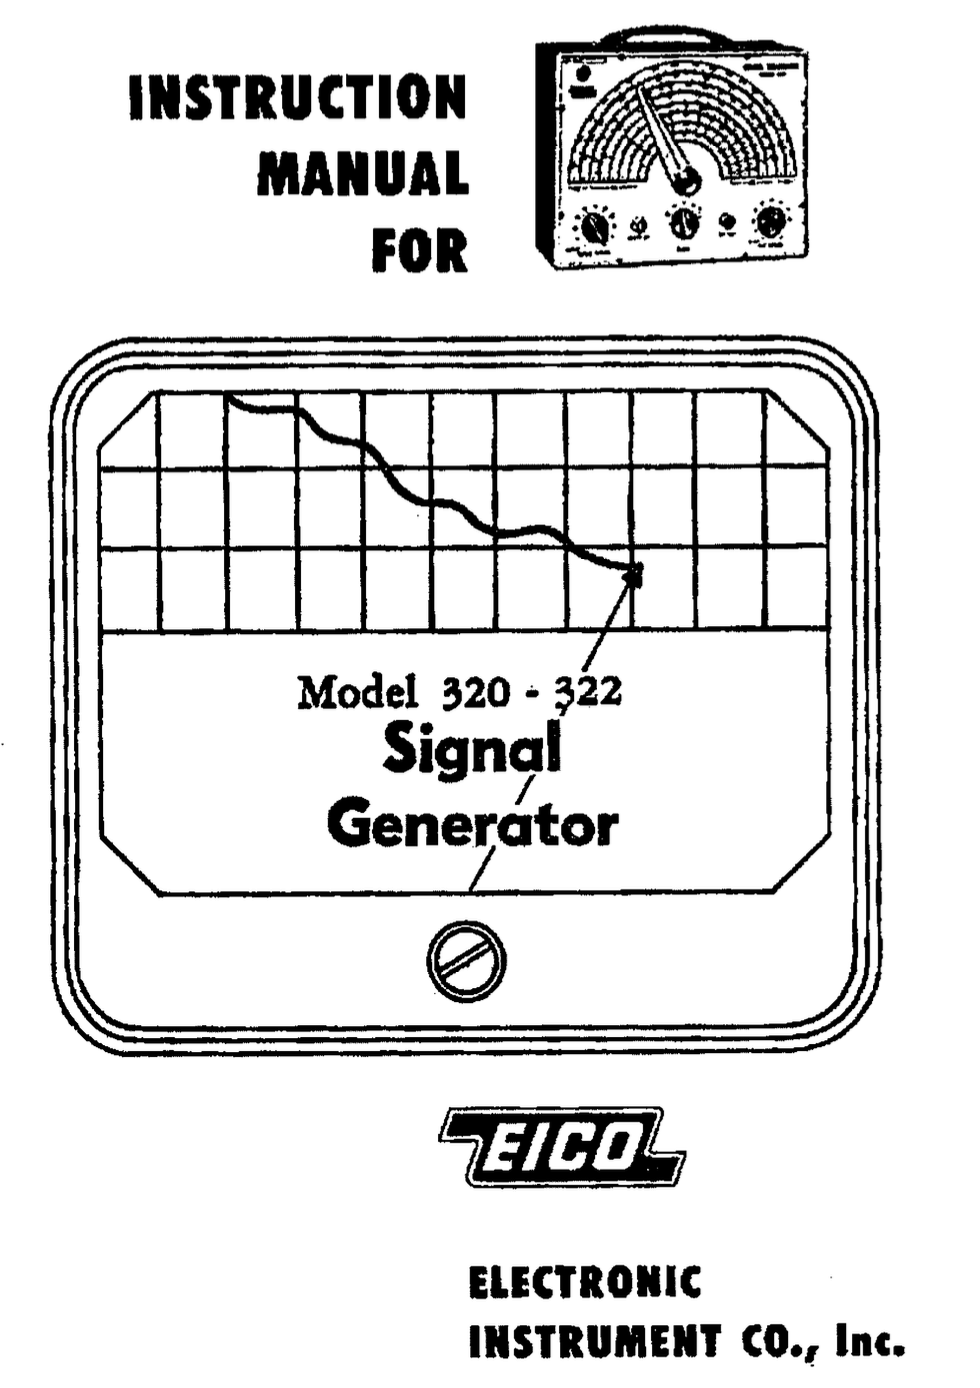 EICO 320 - Instruction Manual 2